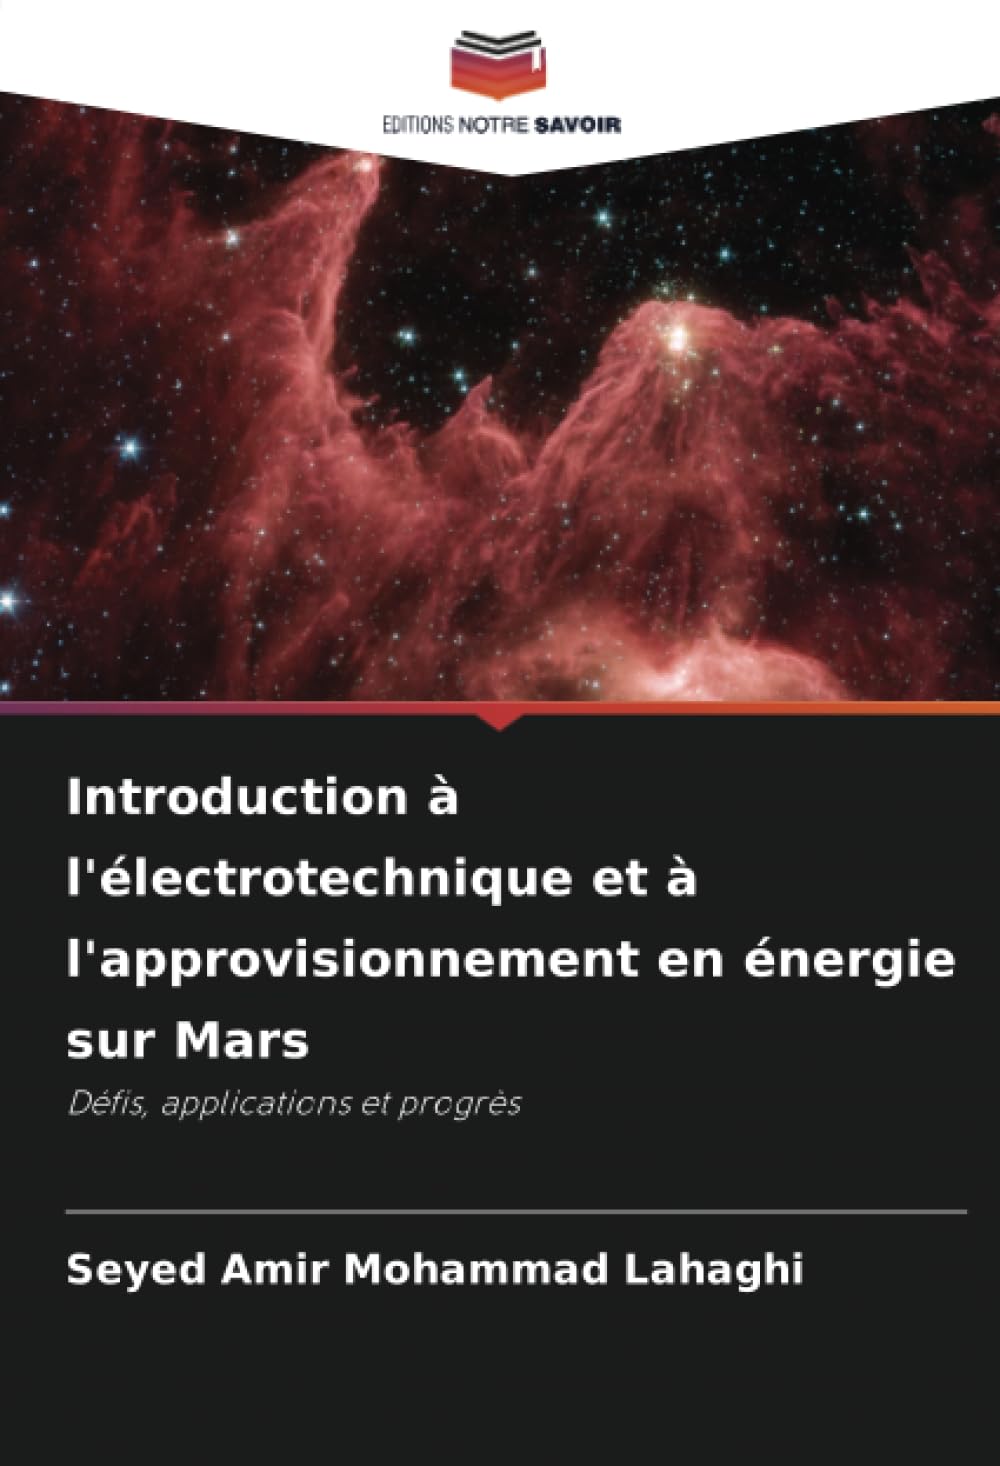 Introduction à l'électrotechnique et à l'approvisionnement en énergie sur Mars: Défis, applications et progrès